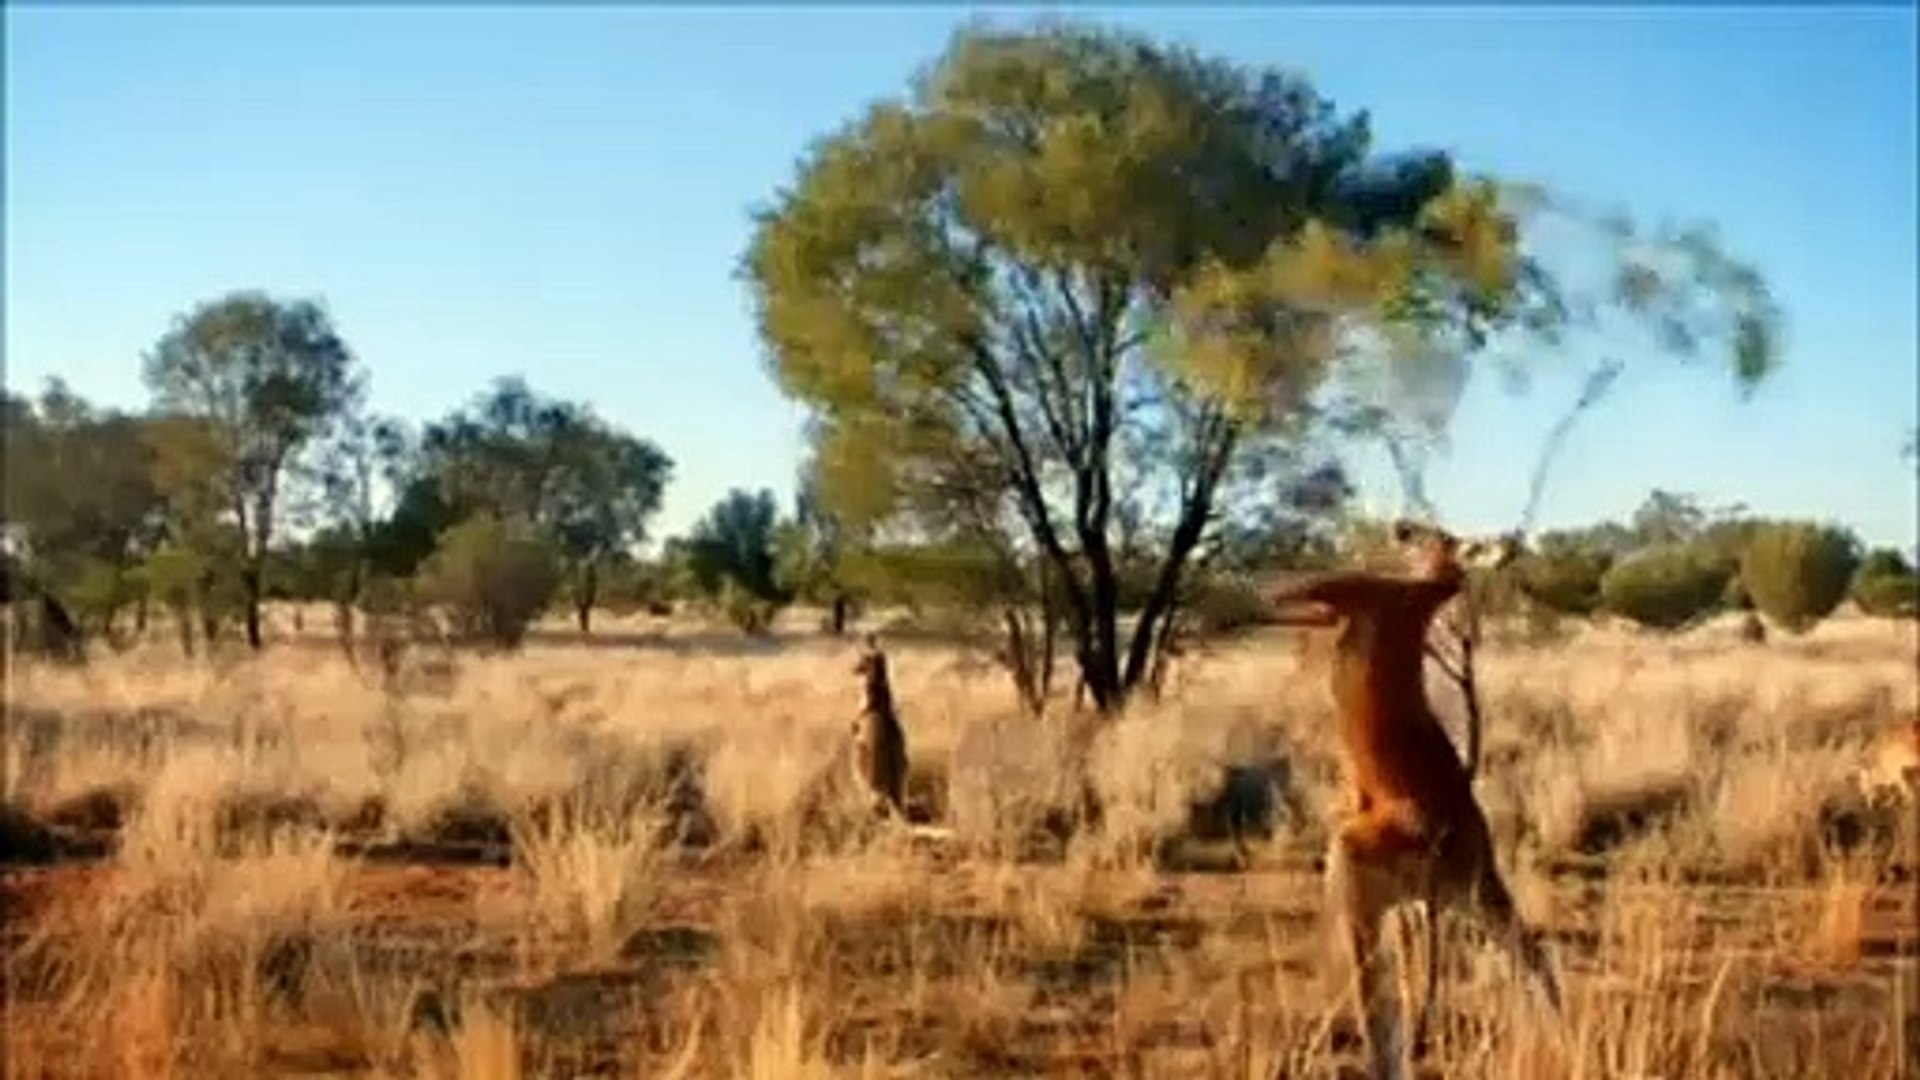 The red kangaroos mating